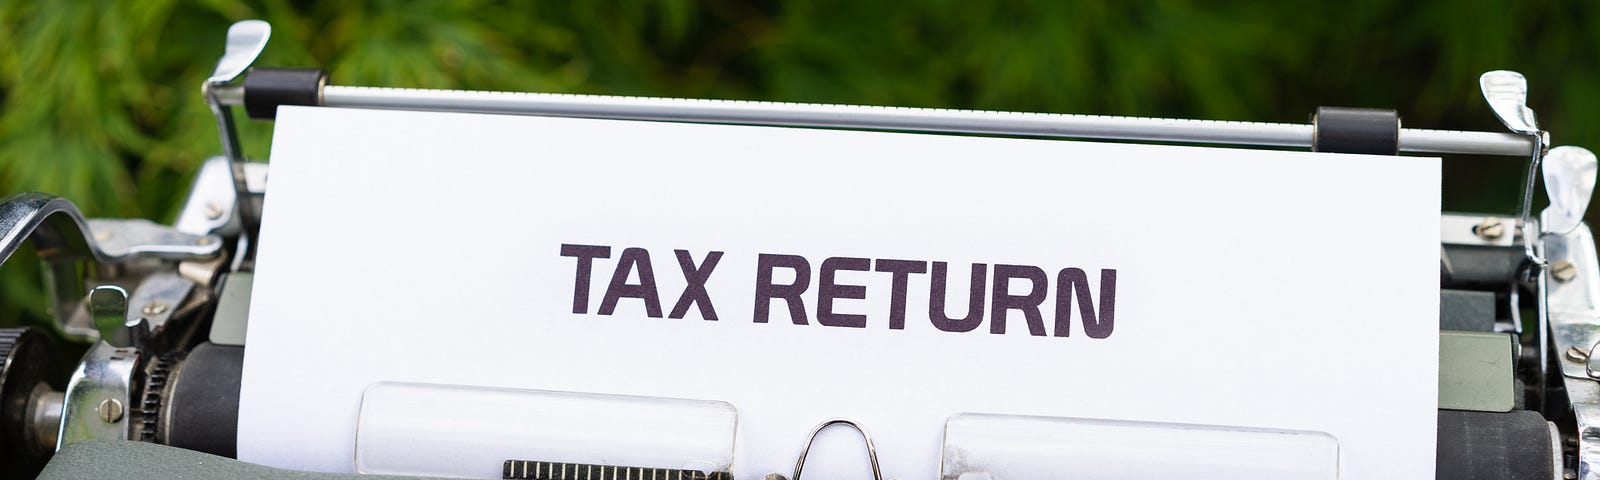 Typewriter showing tax return